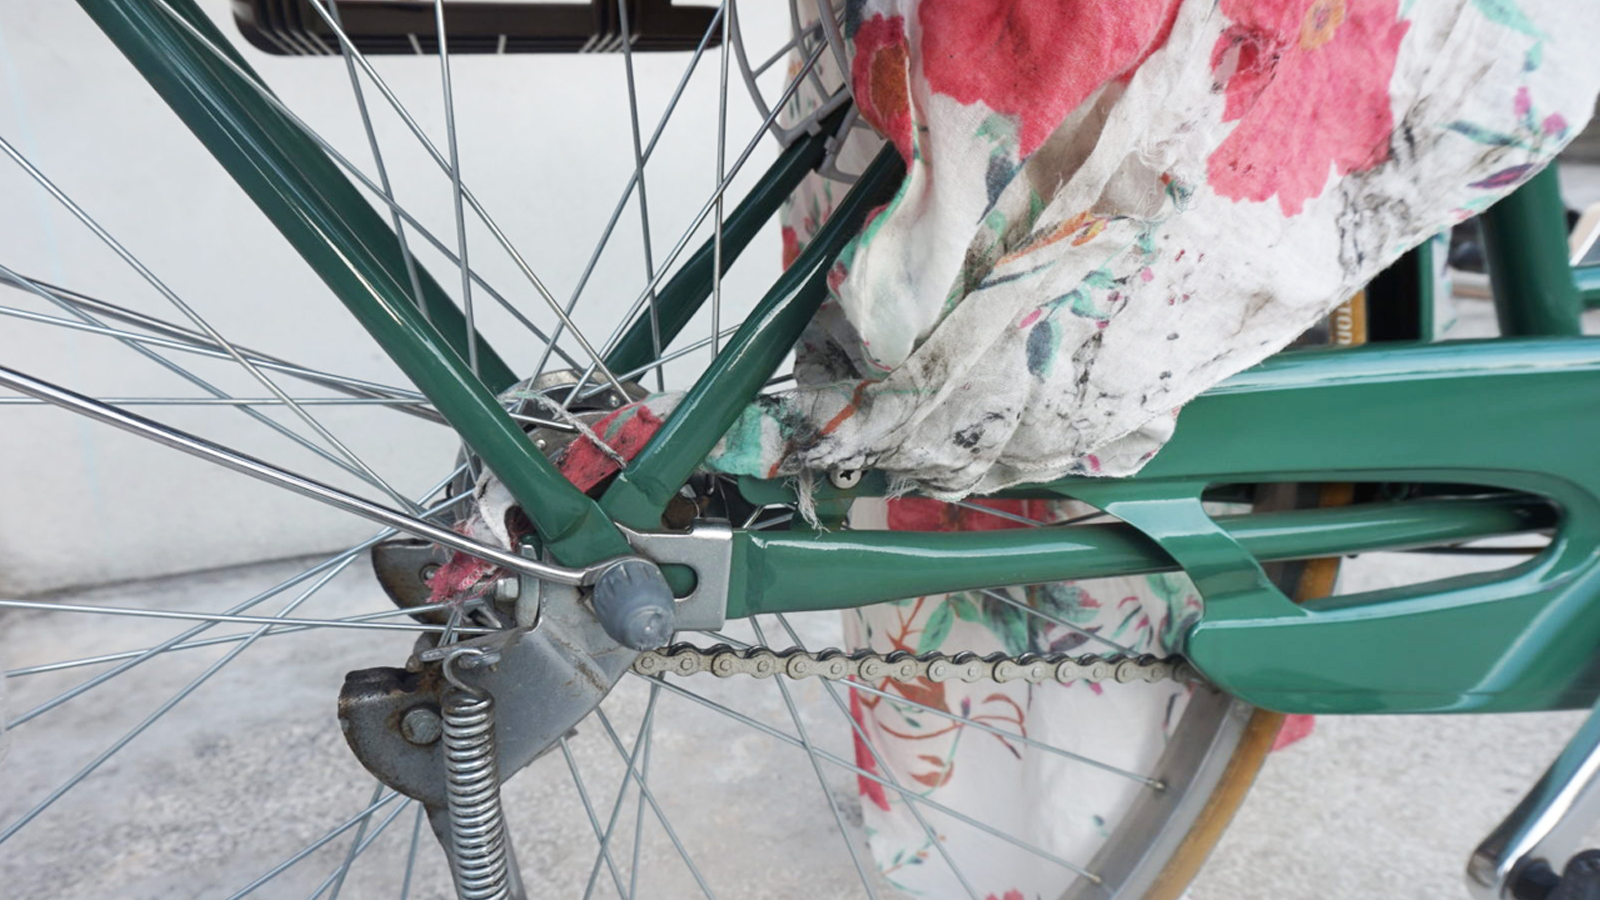 Stop 自転車のロングスカート巻き込まれ事故 検証の末 編み出した防止策はコレ ぎゅってweb